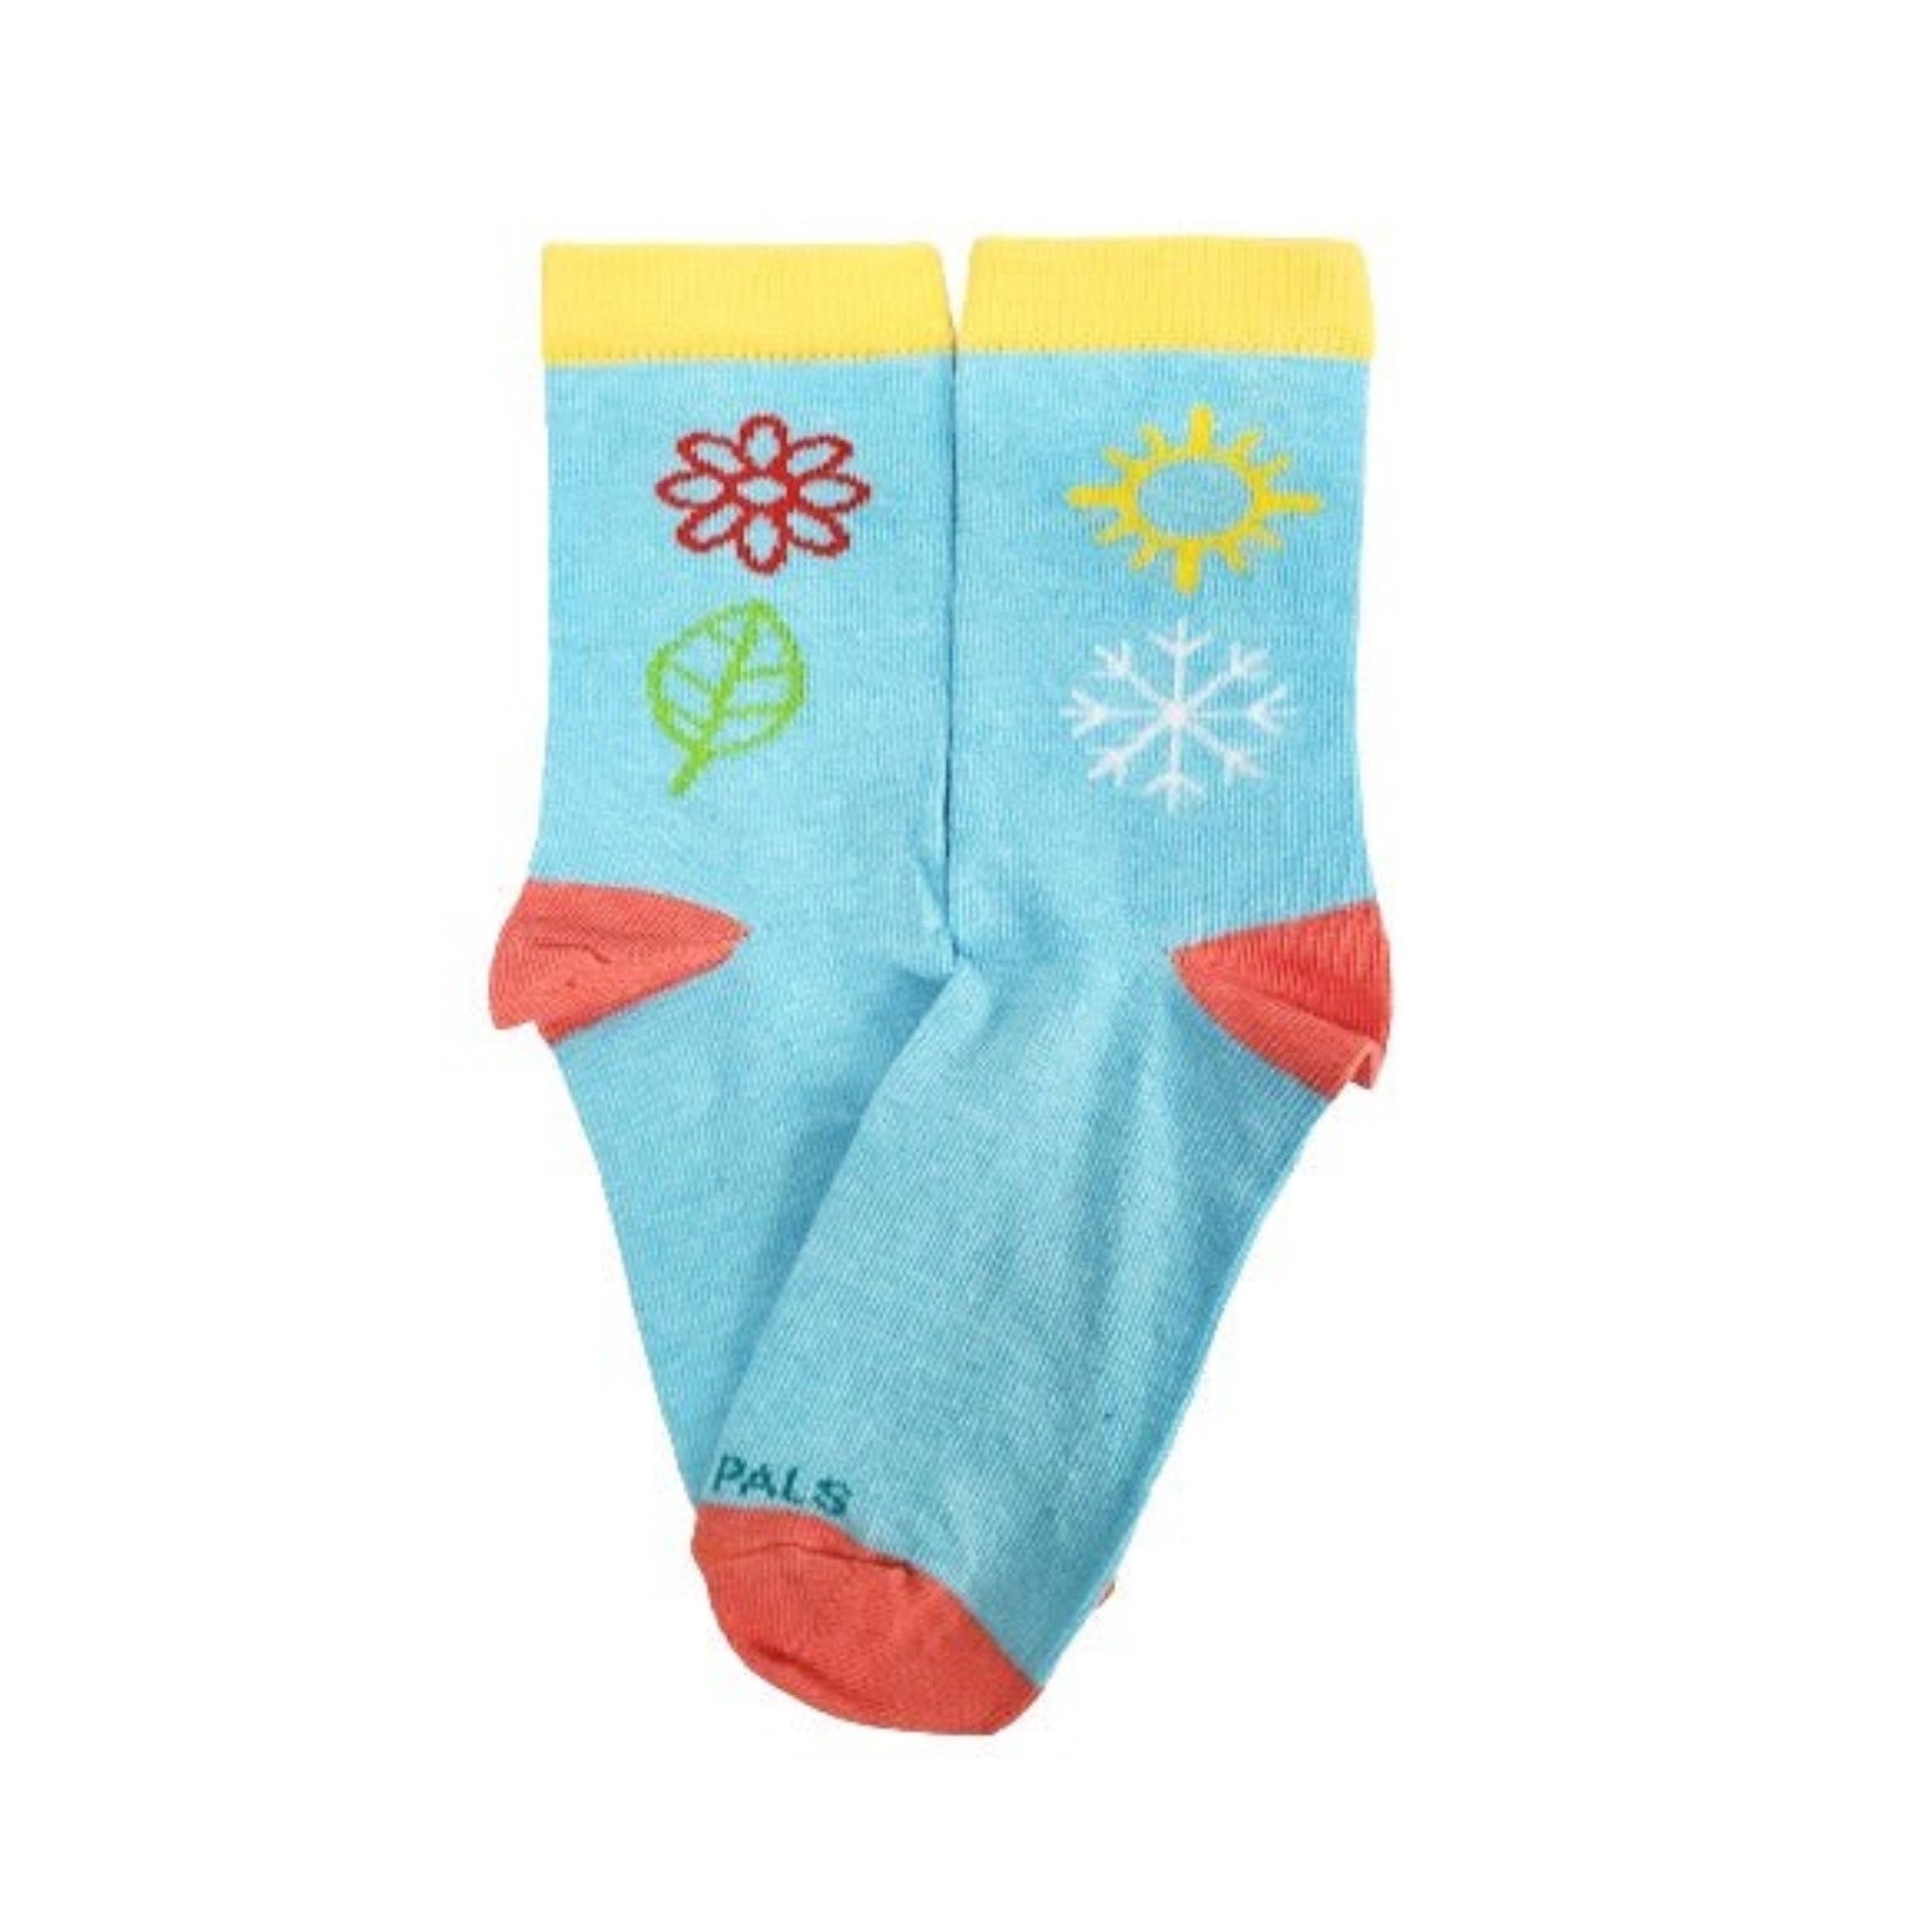 Winter Blossom Kids Socks (Ages 3-7) - Denim or Light Blue